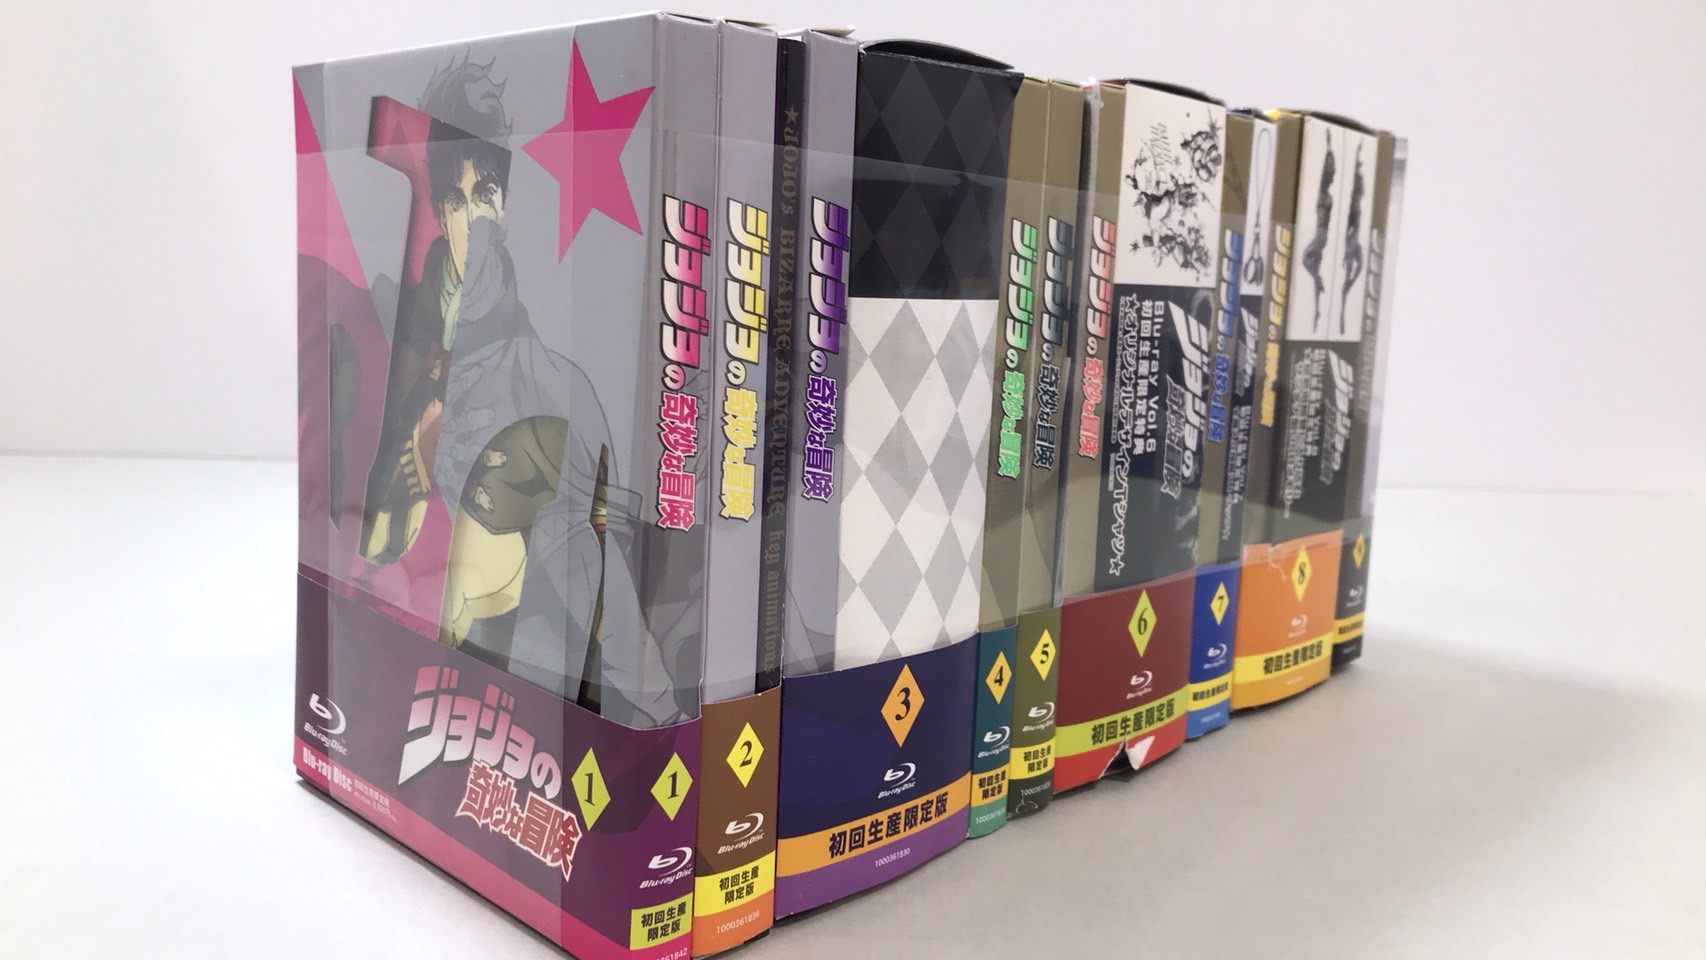 ジョジョの奇妙な冒険 初回生産限定版 全9巻セット Blu-ray DVD - アニメ